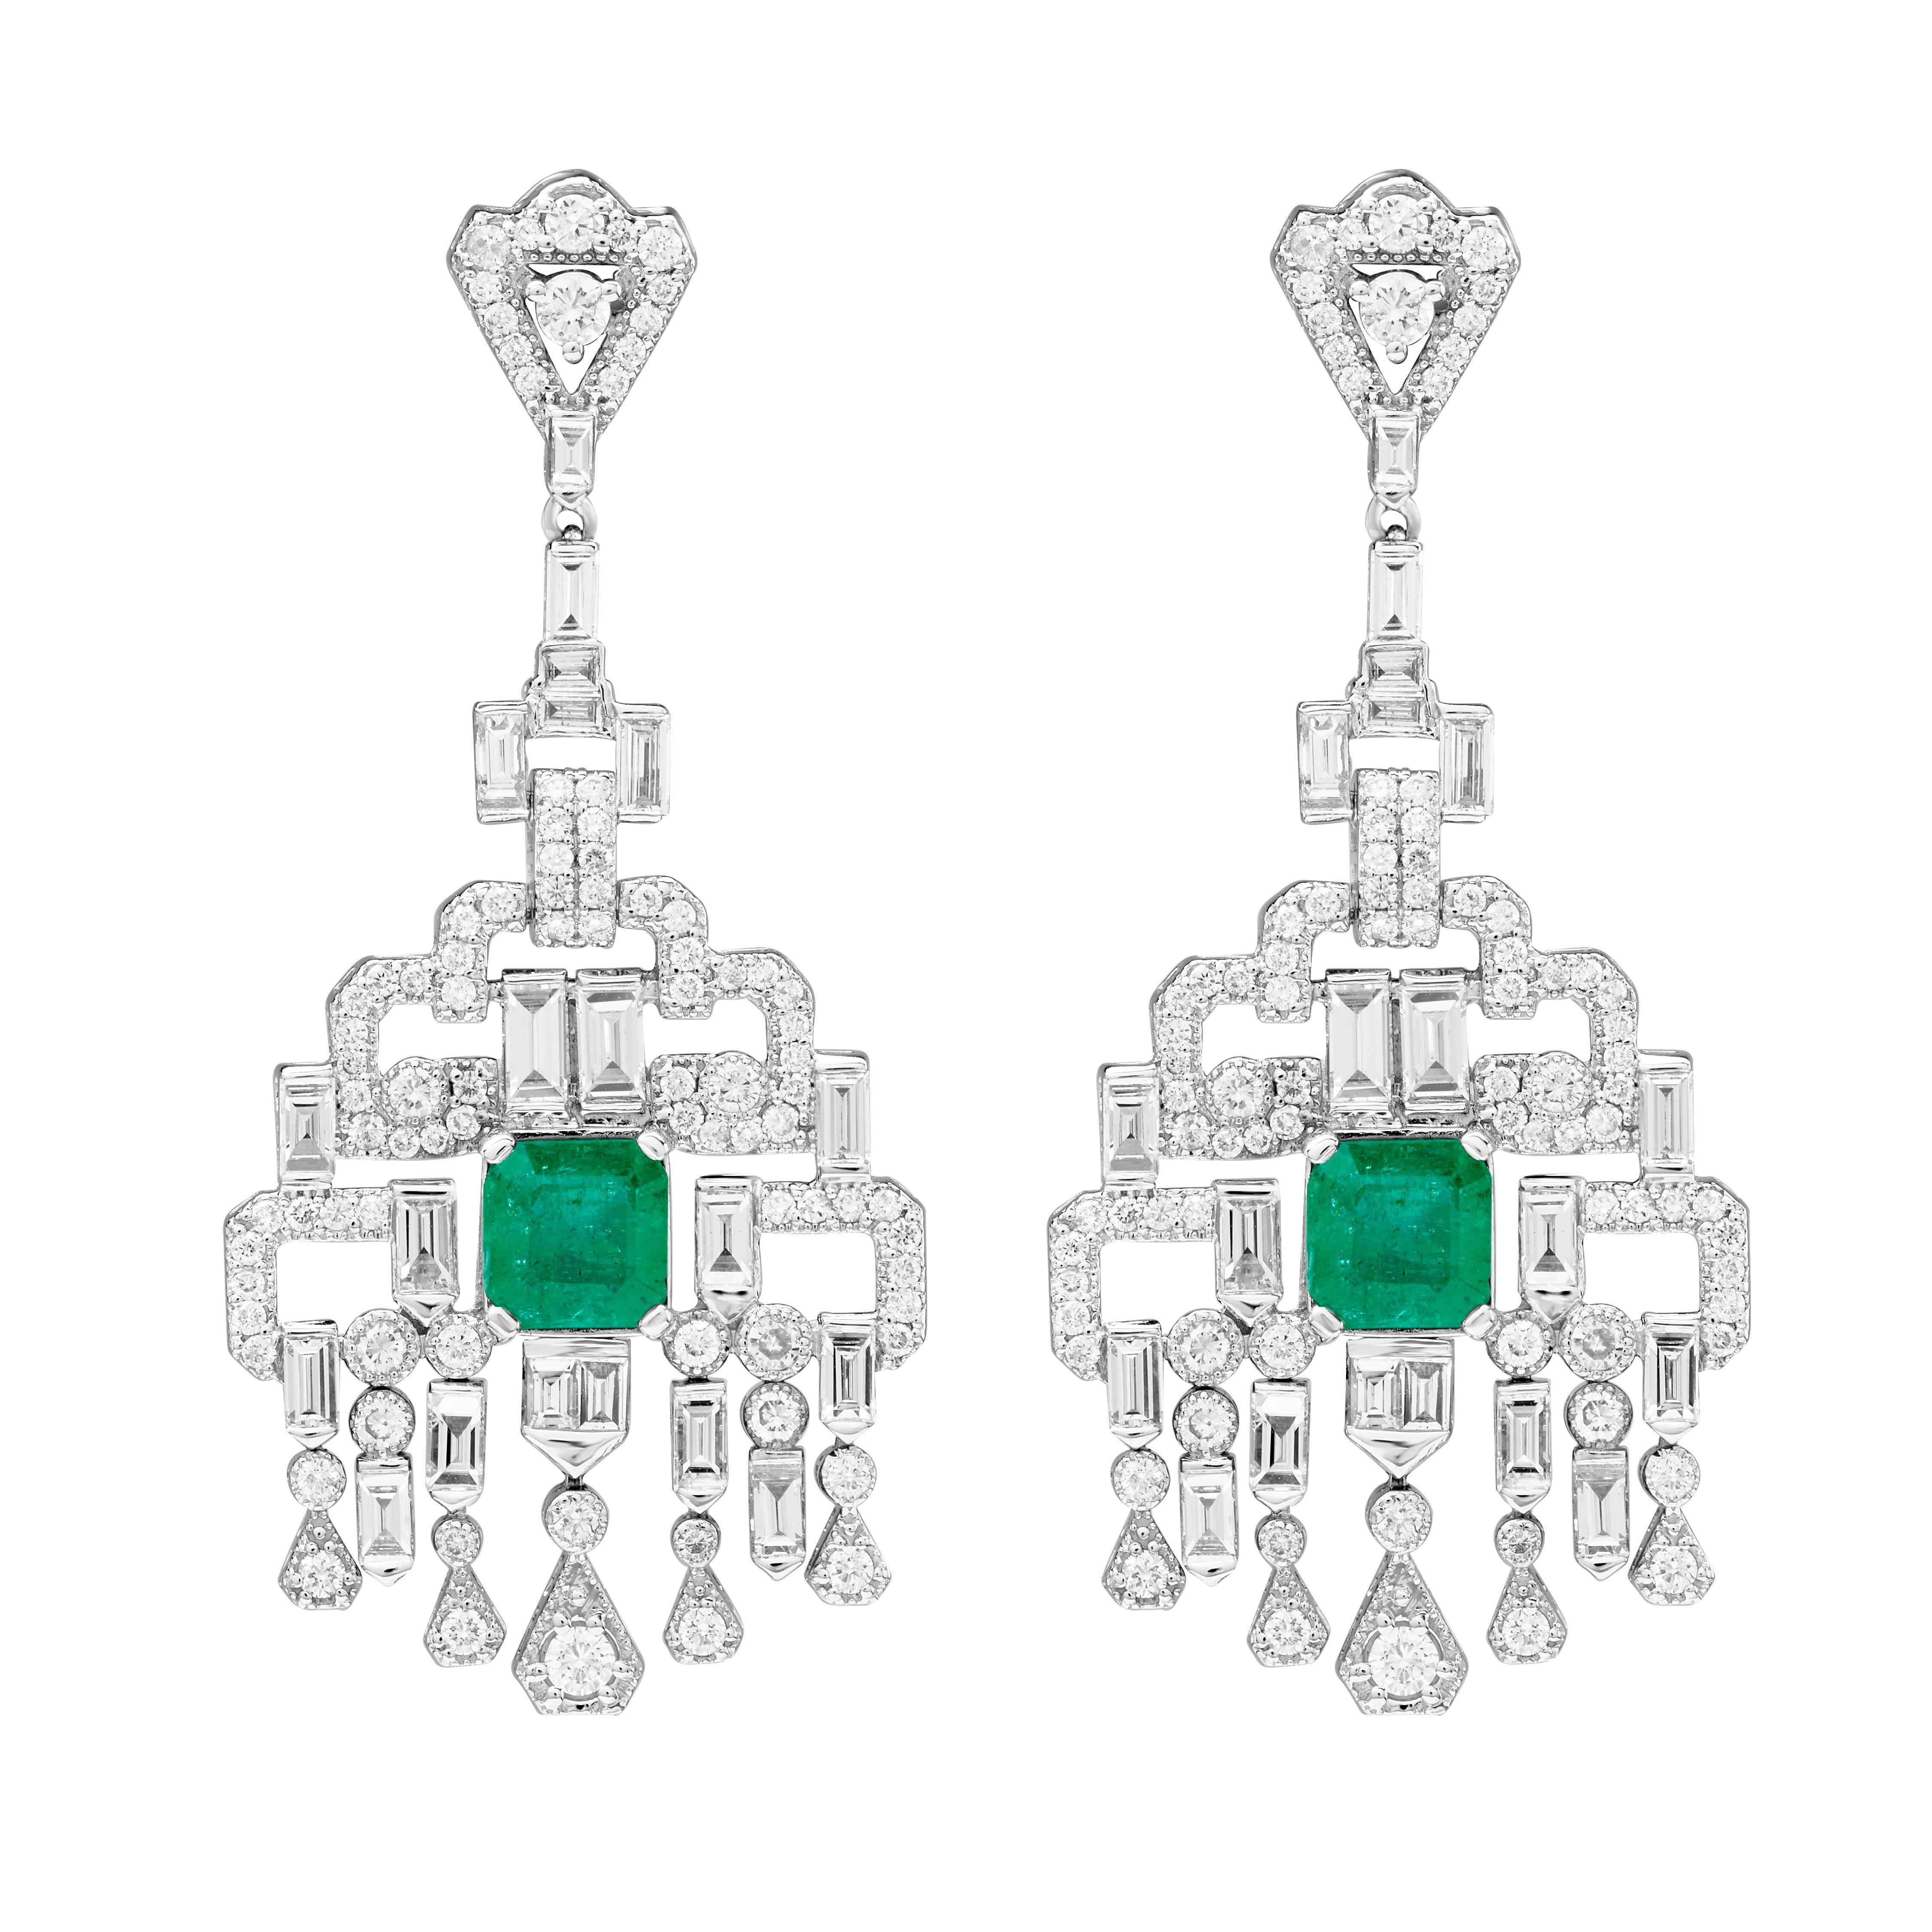 Vivid Green Zambian Emerald Diamond Chandelier Earrings For Sale